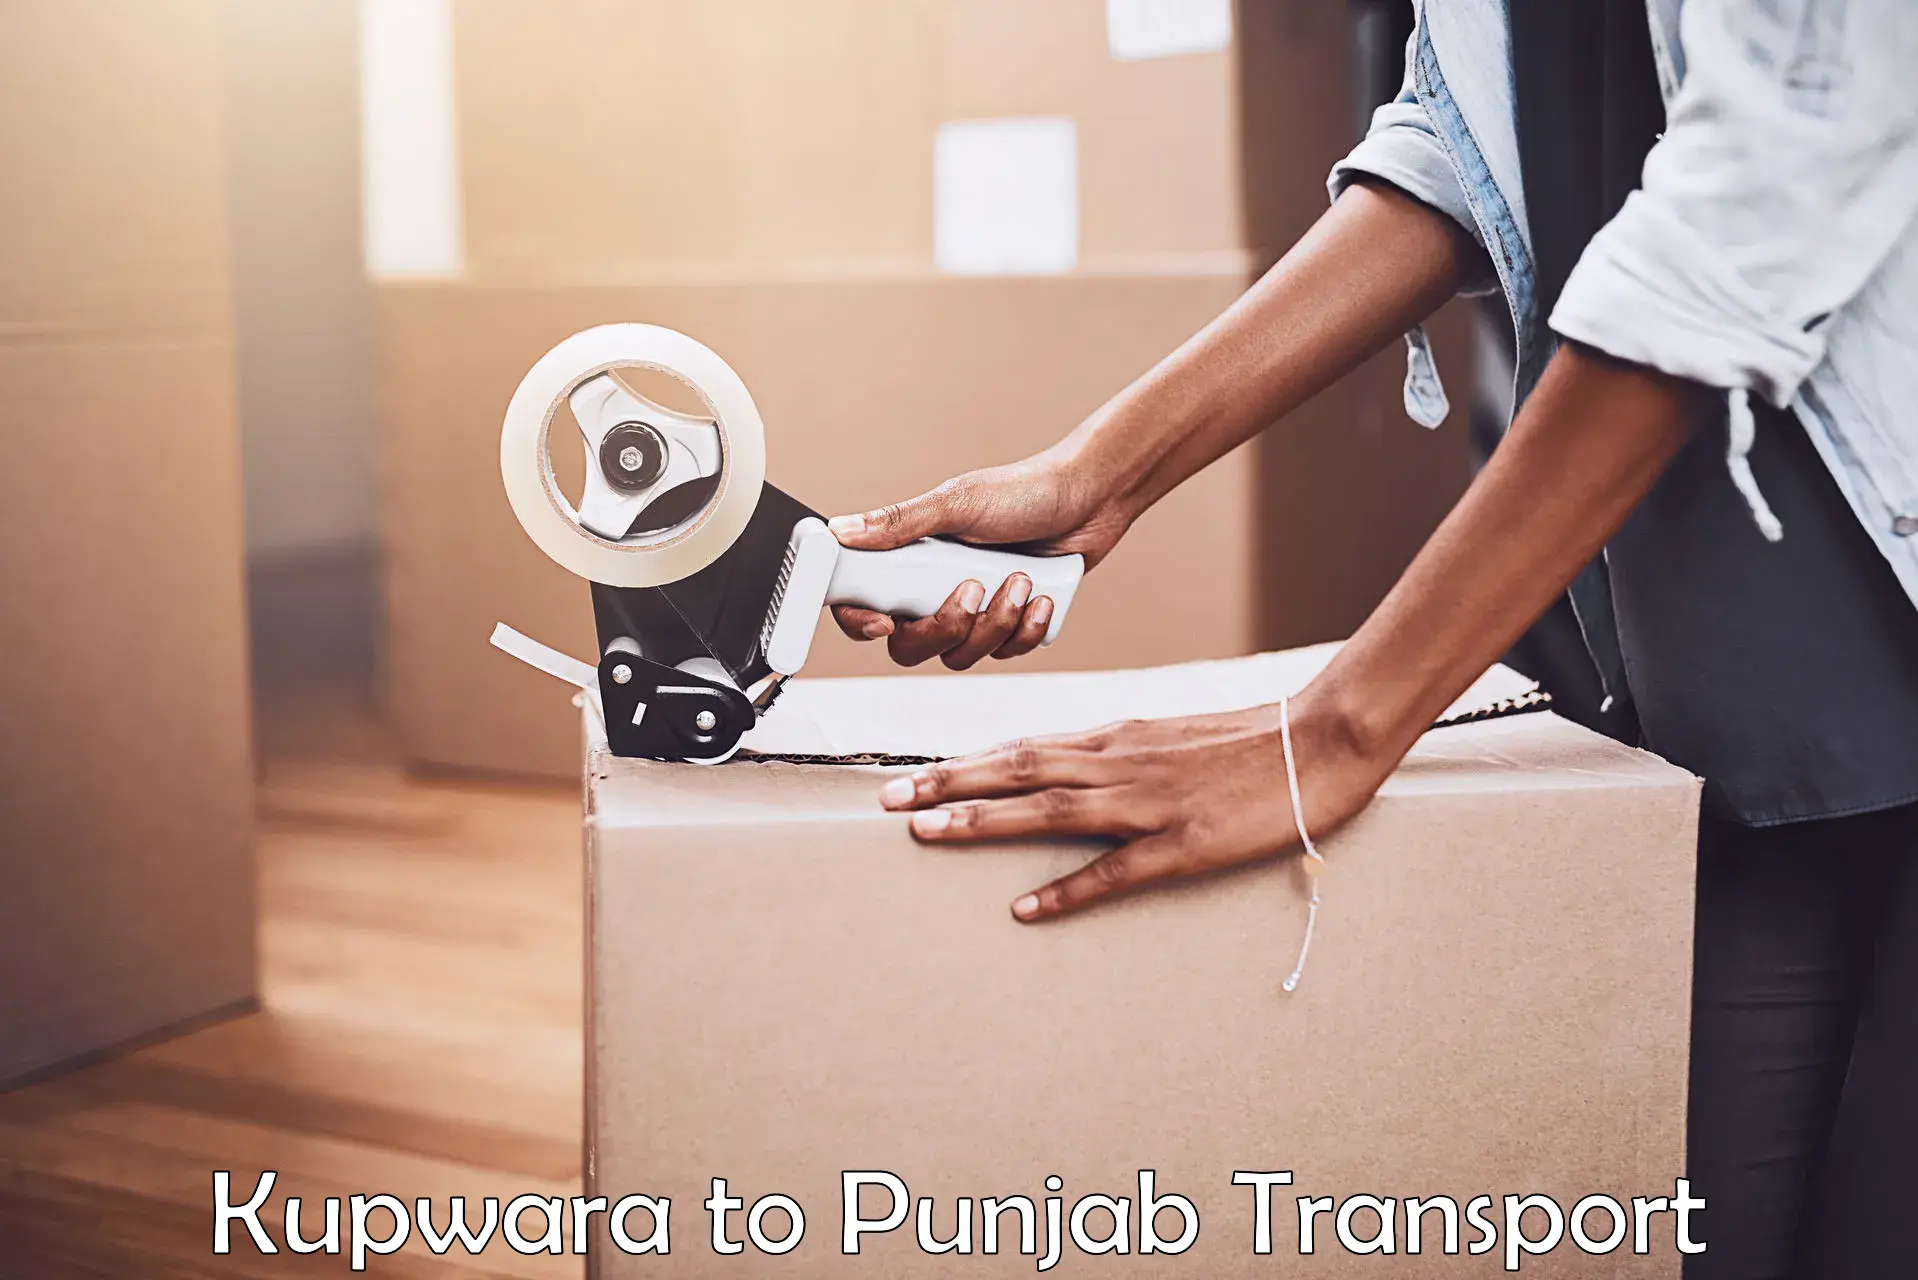 Transport shared services Kupwara to Punjab